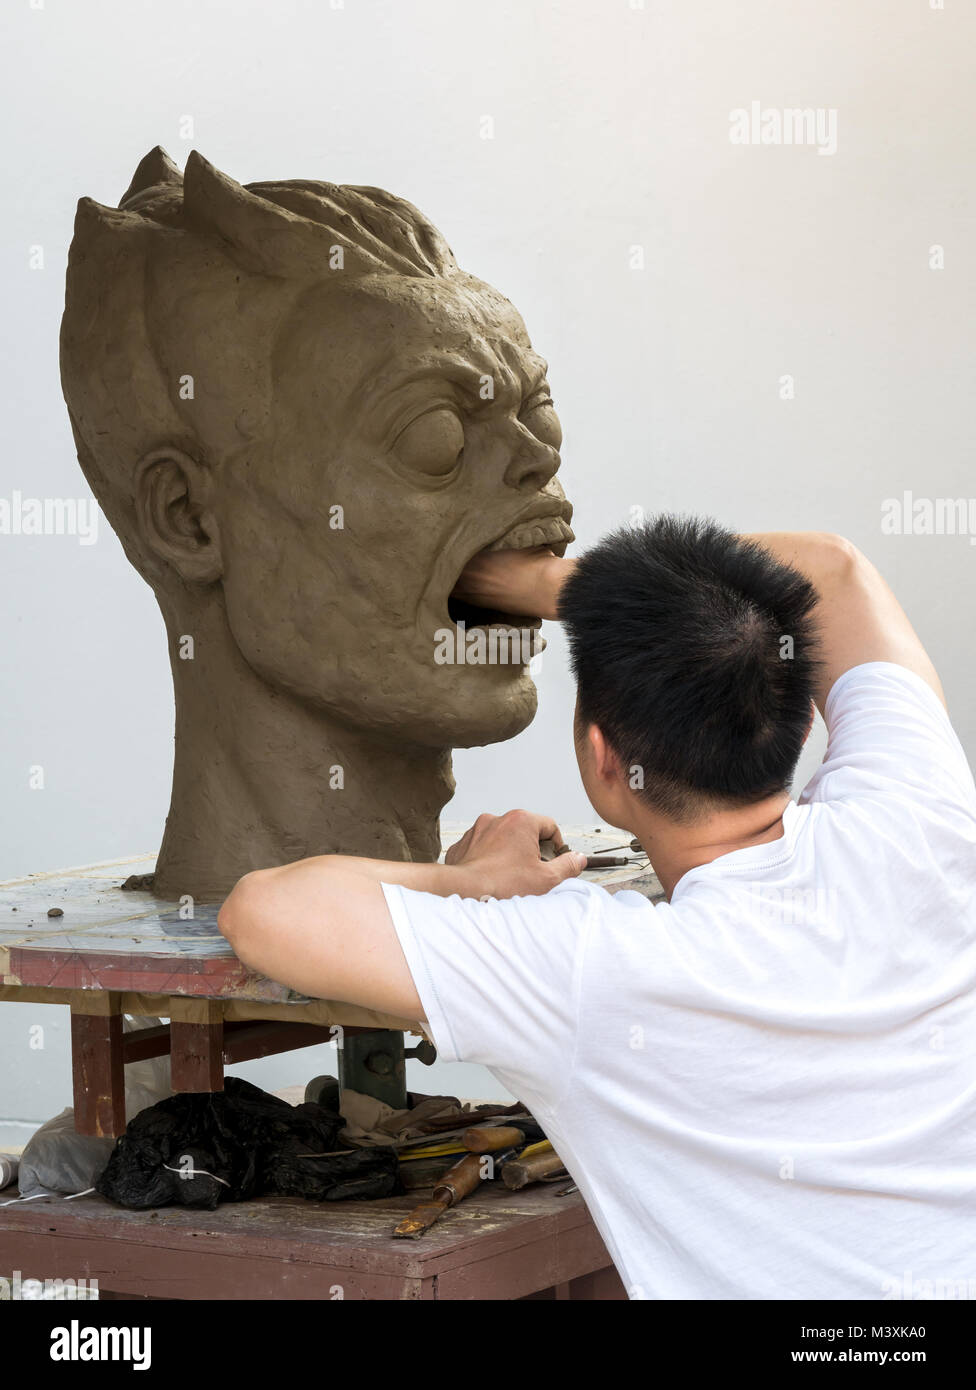 Scultore lavorando sulla sua scultura in argilla, un grande ritratto,con sfondo bianco Foto Stock